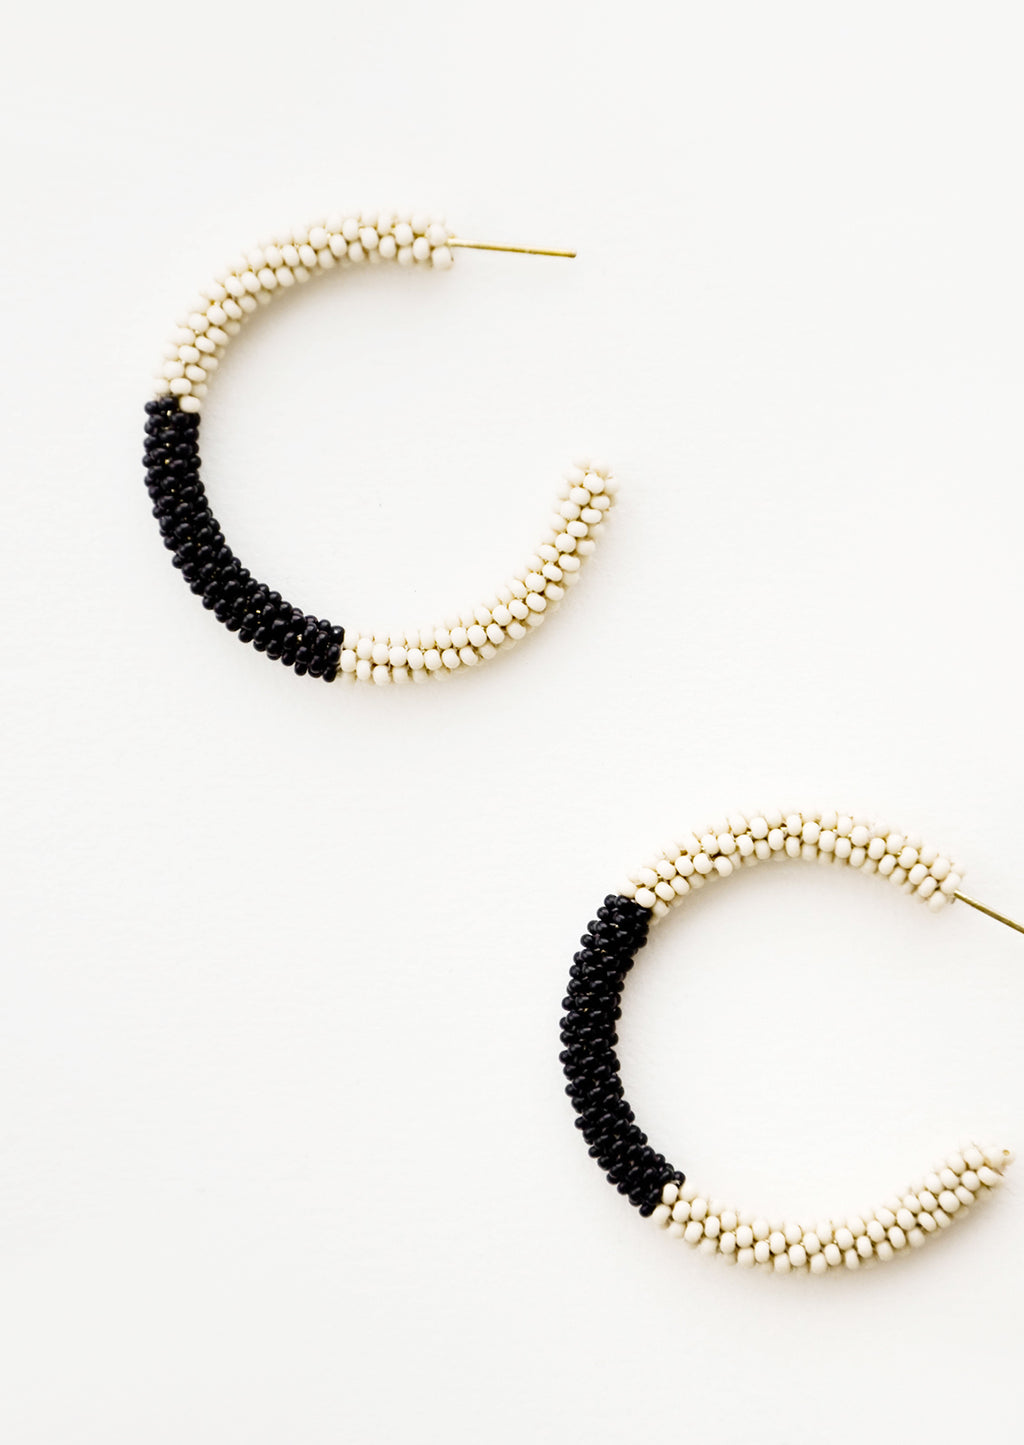 Ivory / Onyx: Black and ivory colorblock beaded hoop earrings.